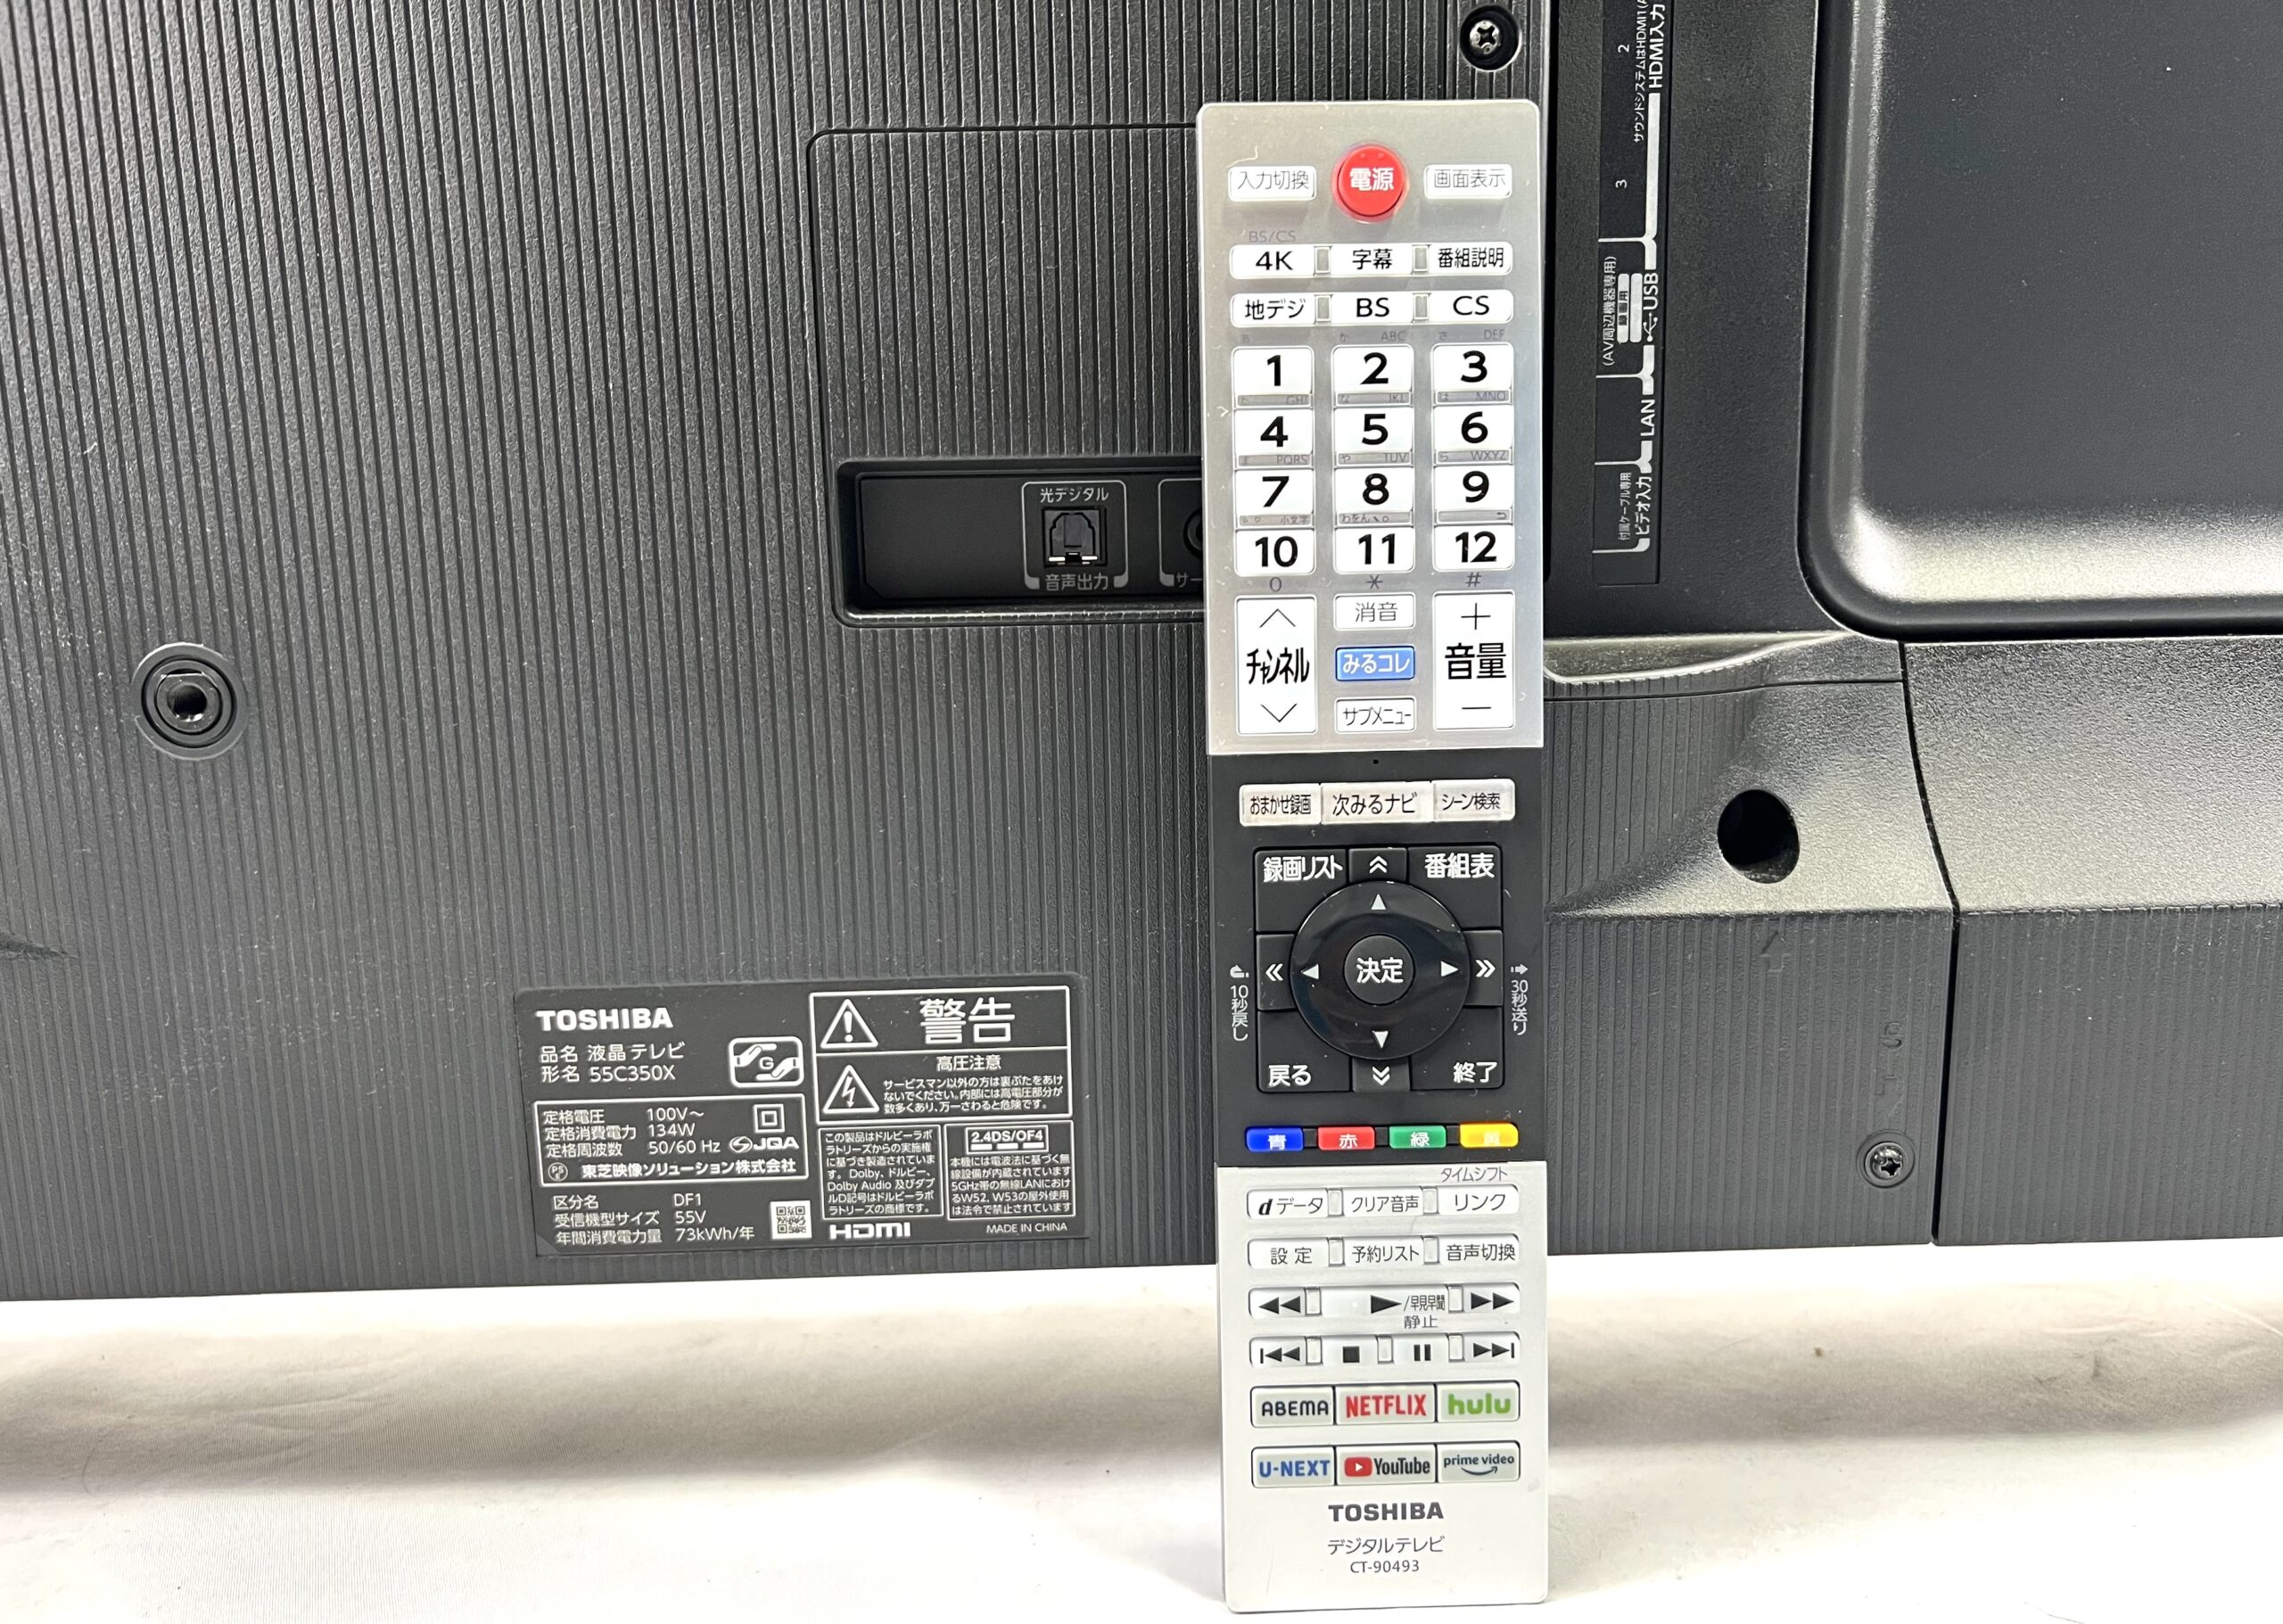 TOSHIBA 4K液晶テレビ 55C350X 2022年製を出張買取しました！ | 即日